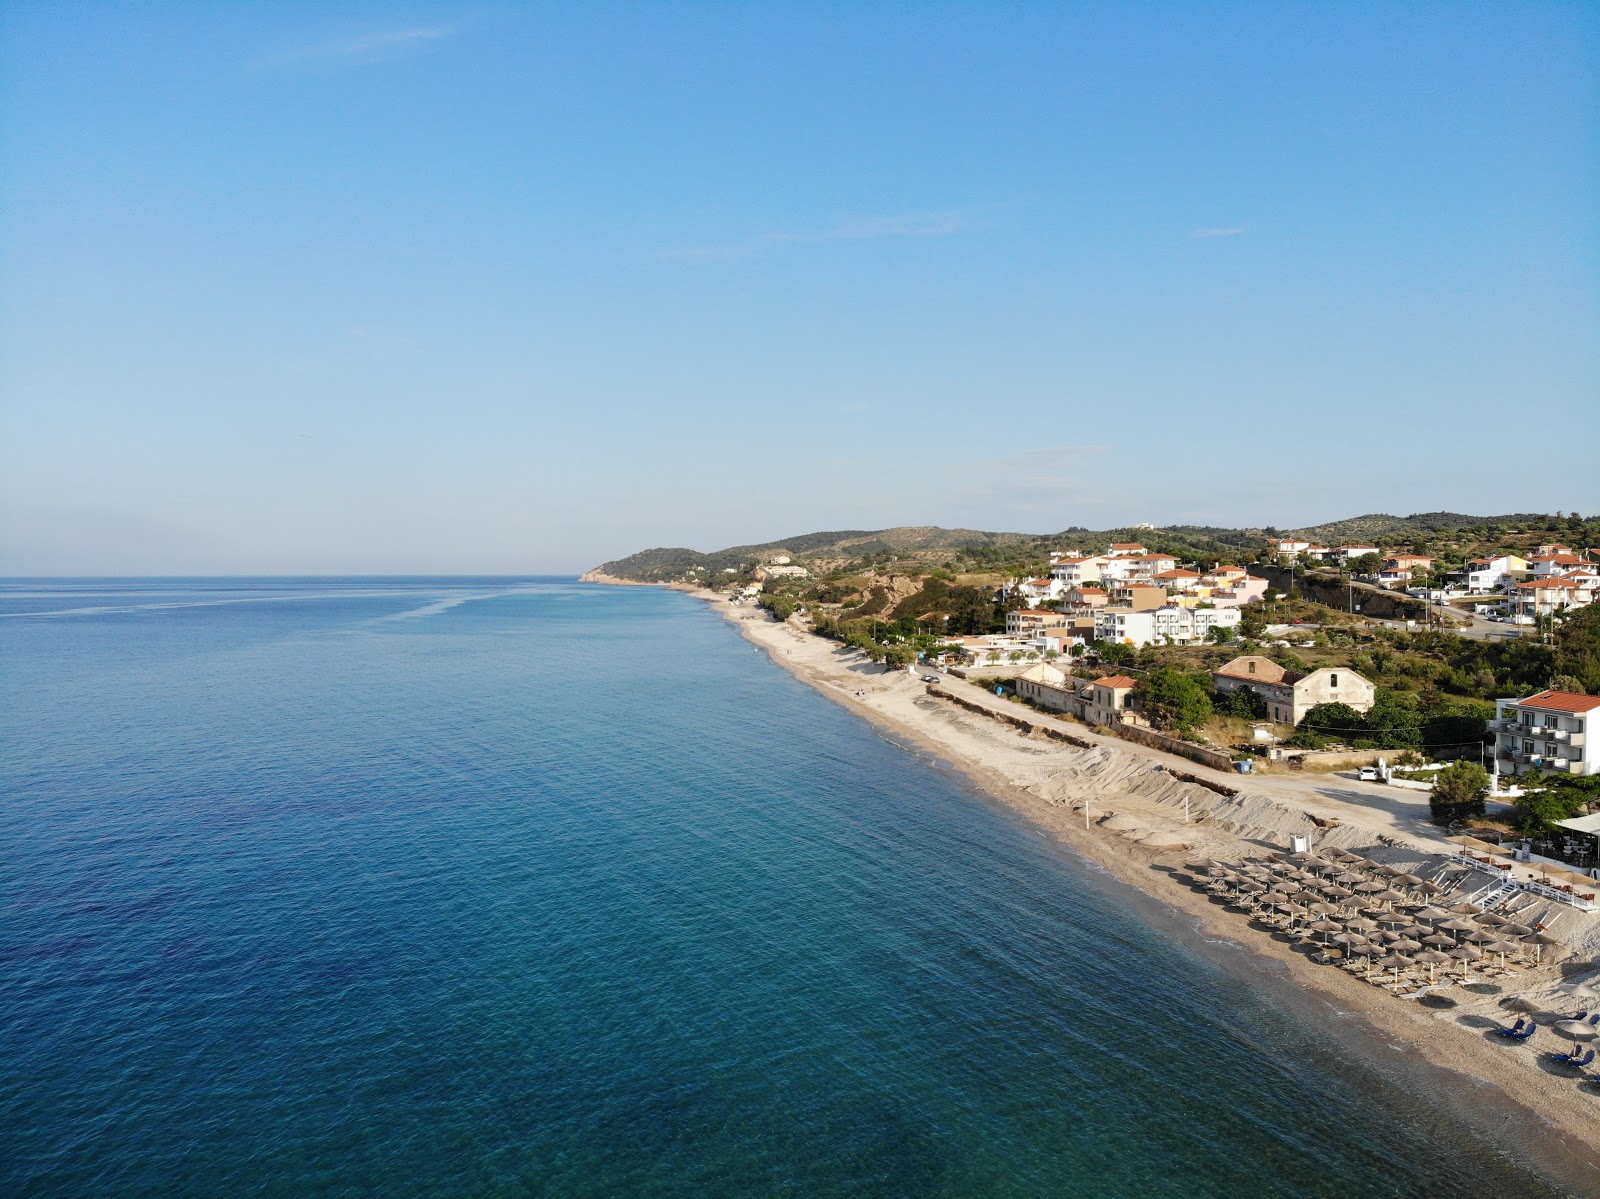 Foto af Aegean beach - populært sted blandt afslapningskendere